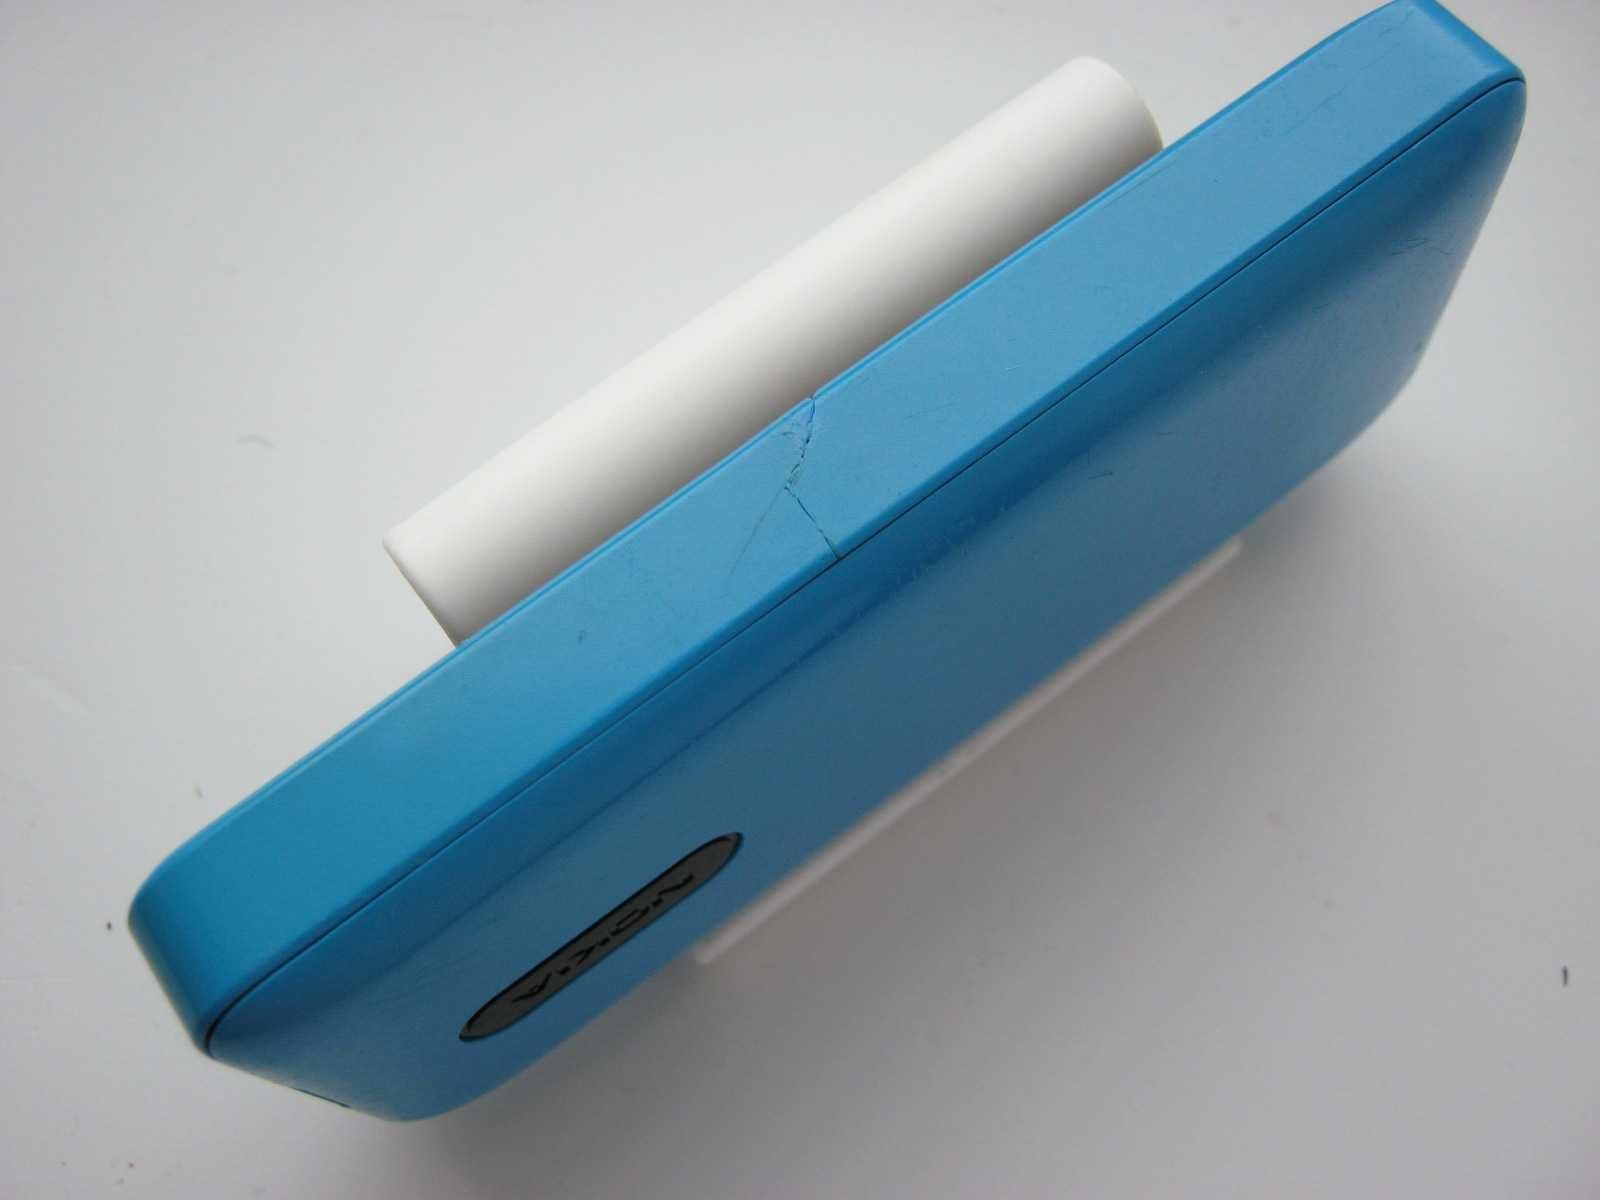 Телефон Nokia 105 Blue (RM-908) 1 SIM карта